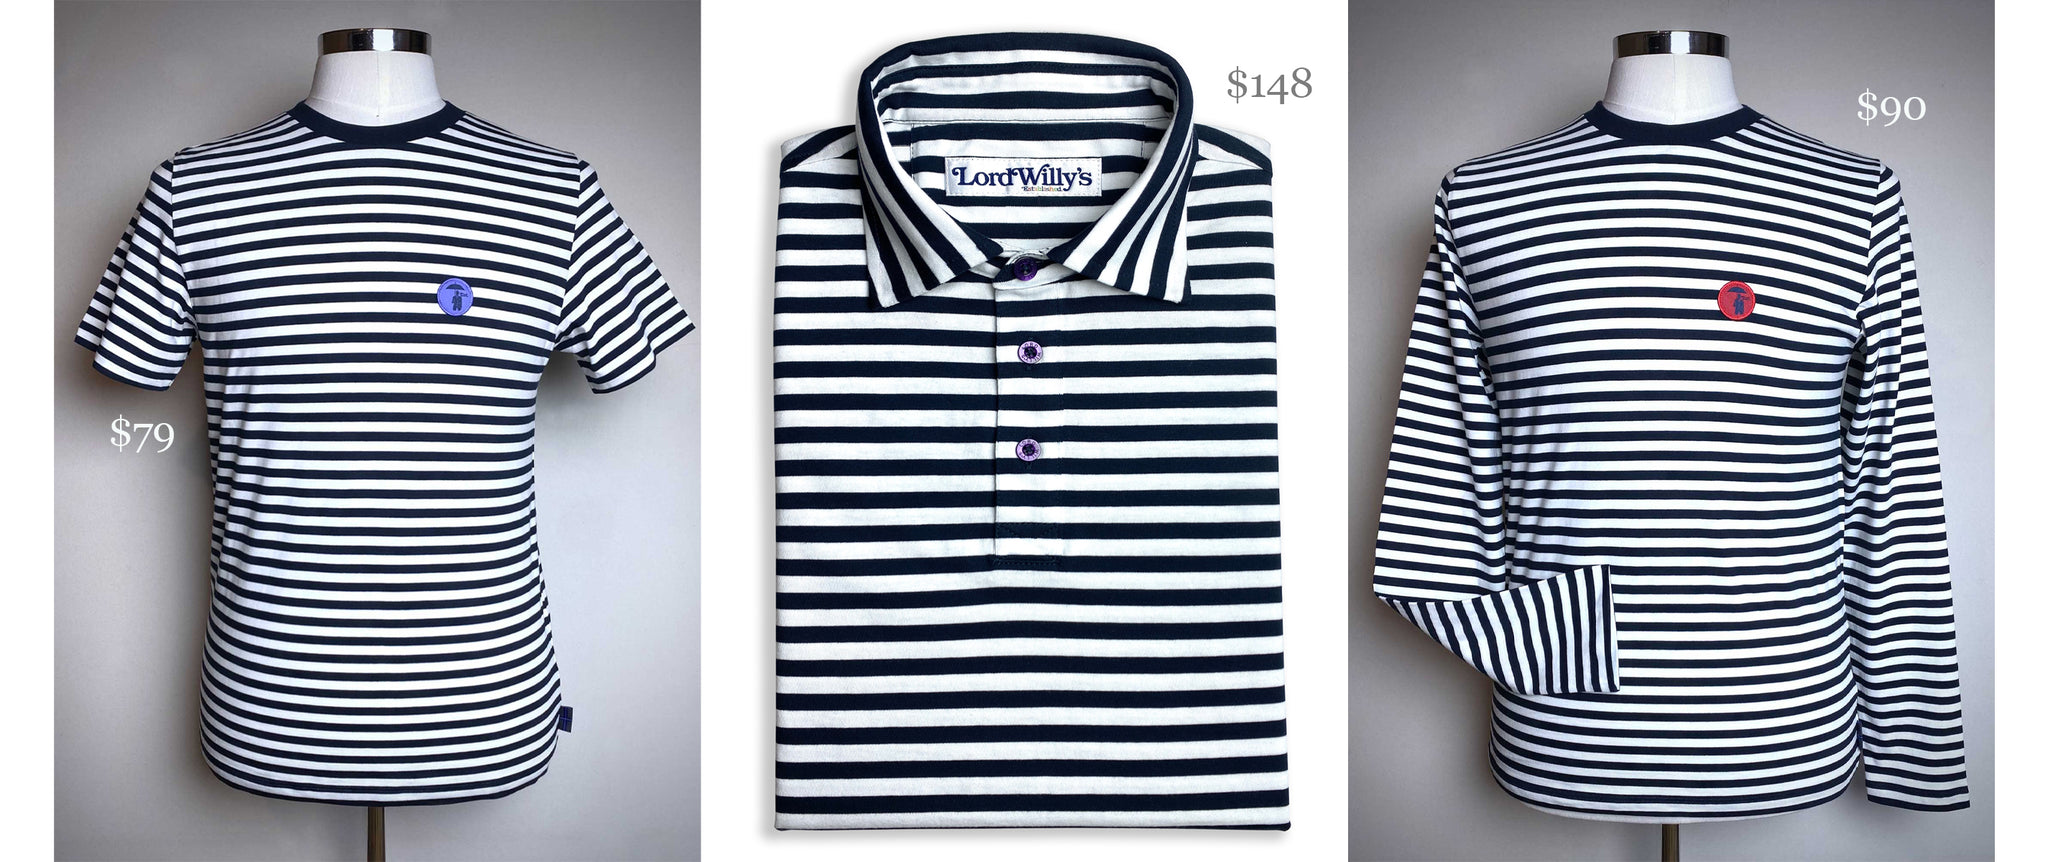 Stripe T $79. Stripe polo $148. Stripe Long sleeve T $90.